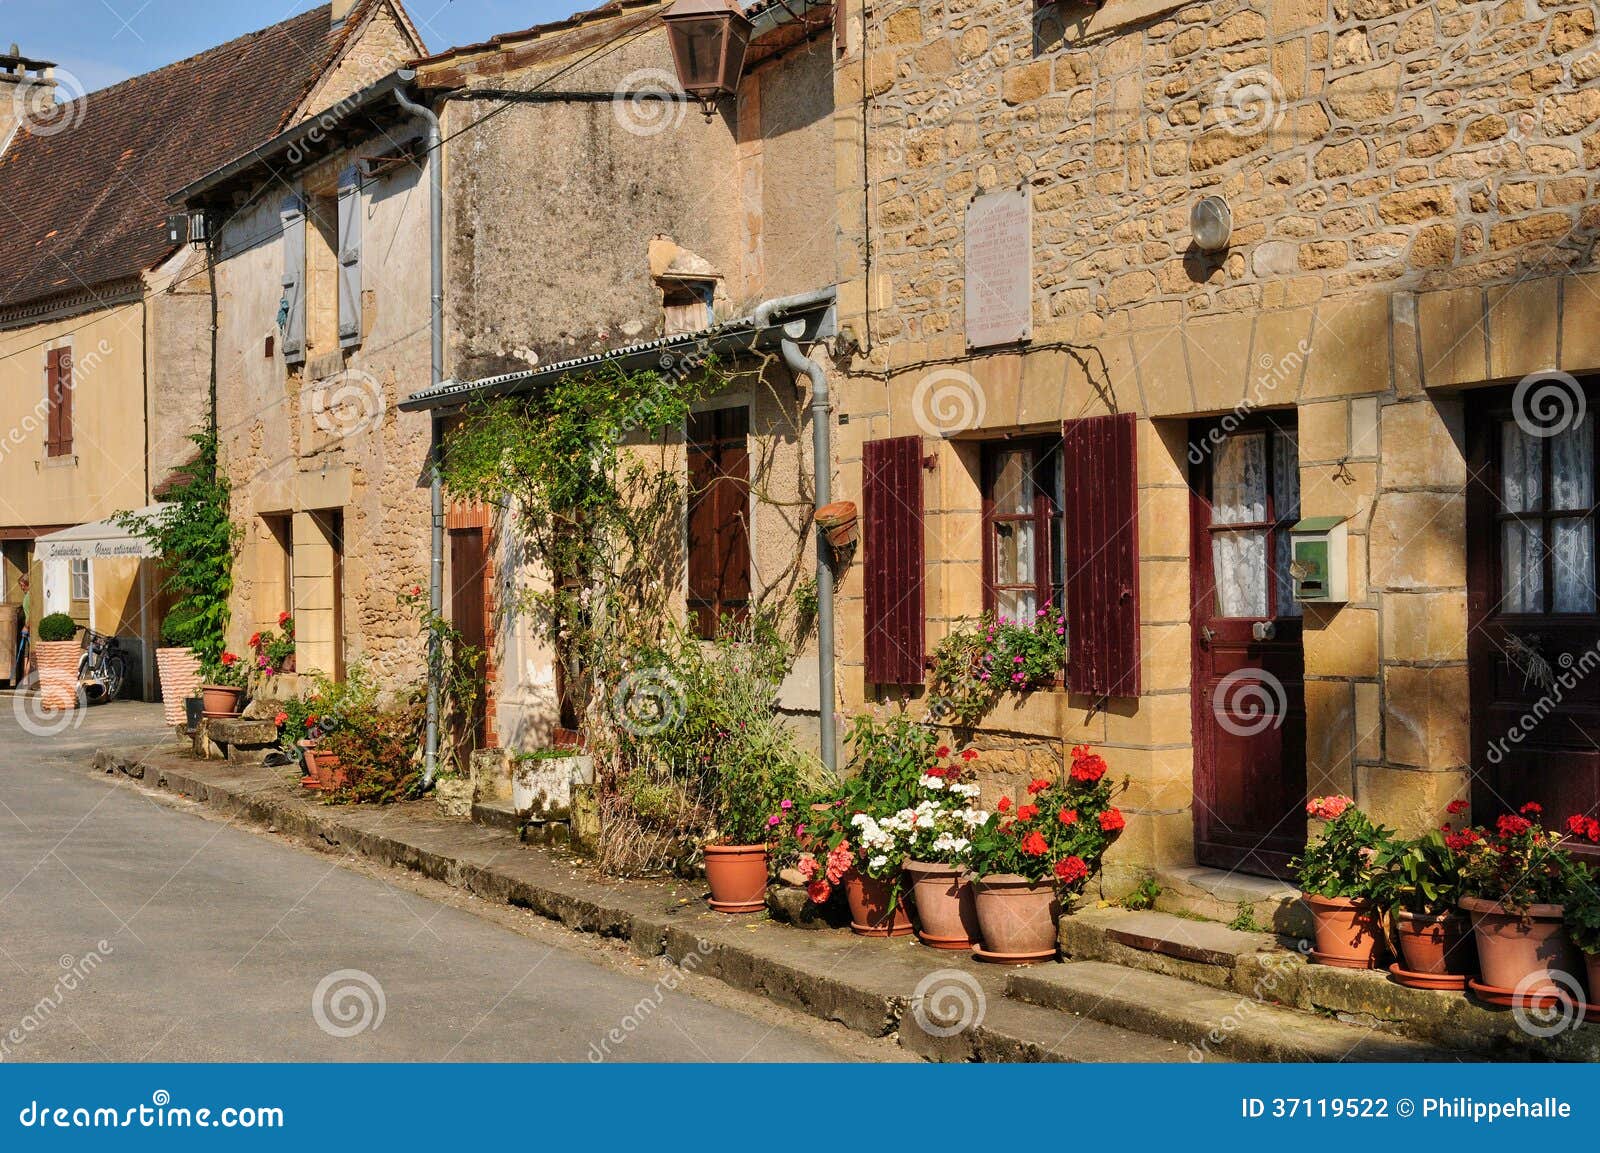 france, picturesque village of saint leon sur vezere